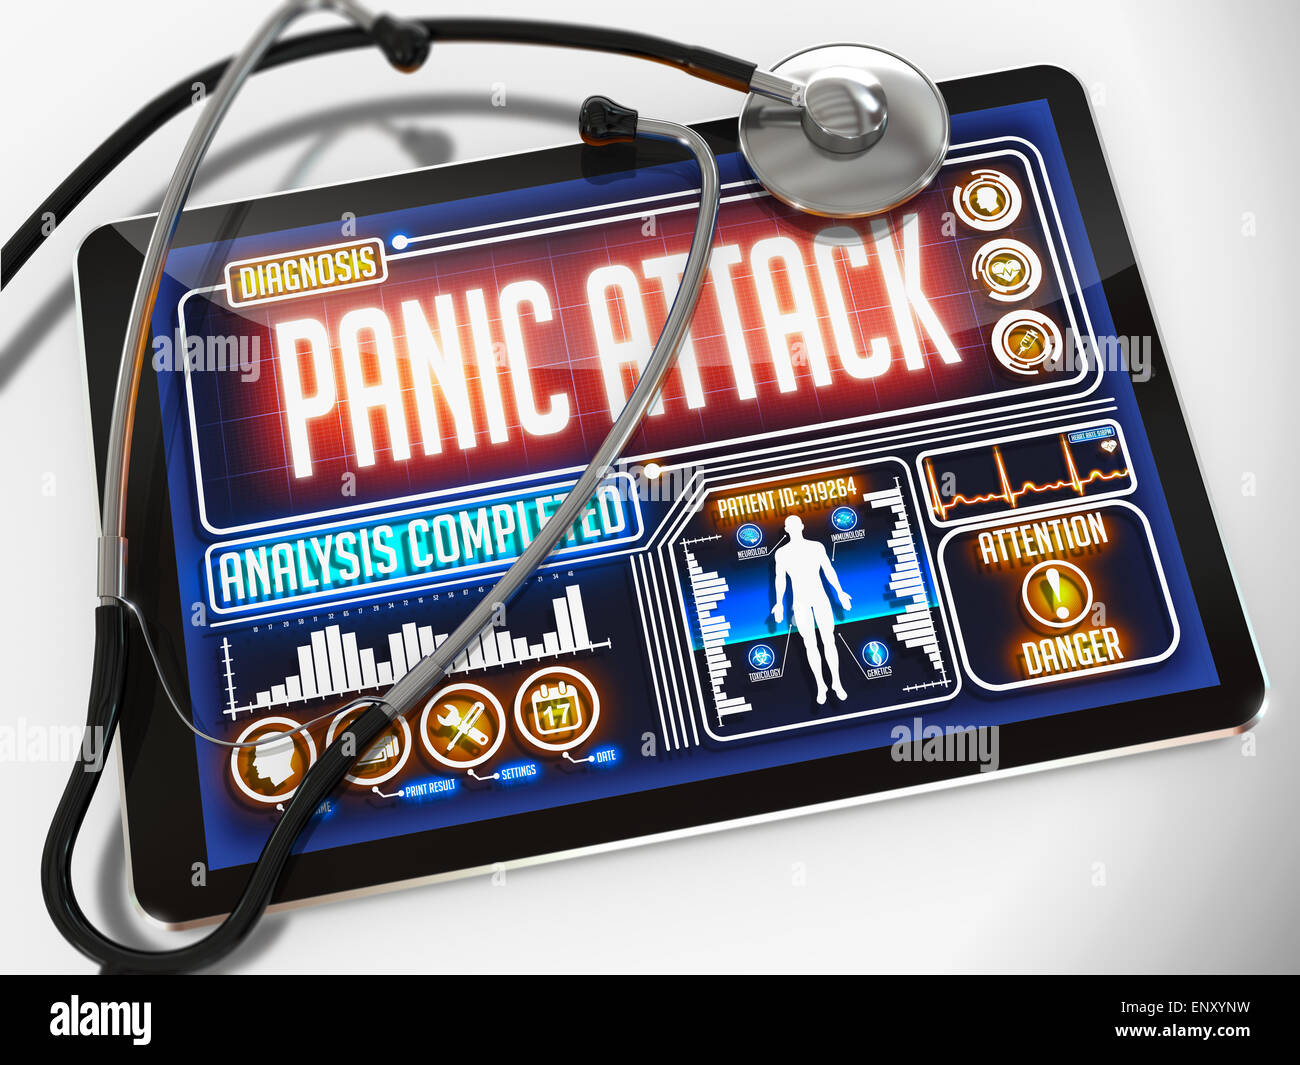 Attacco di panico sul display del Medical Tablet. Foto Stock